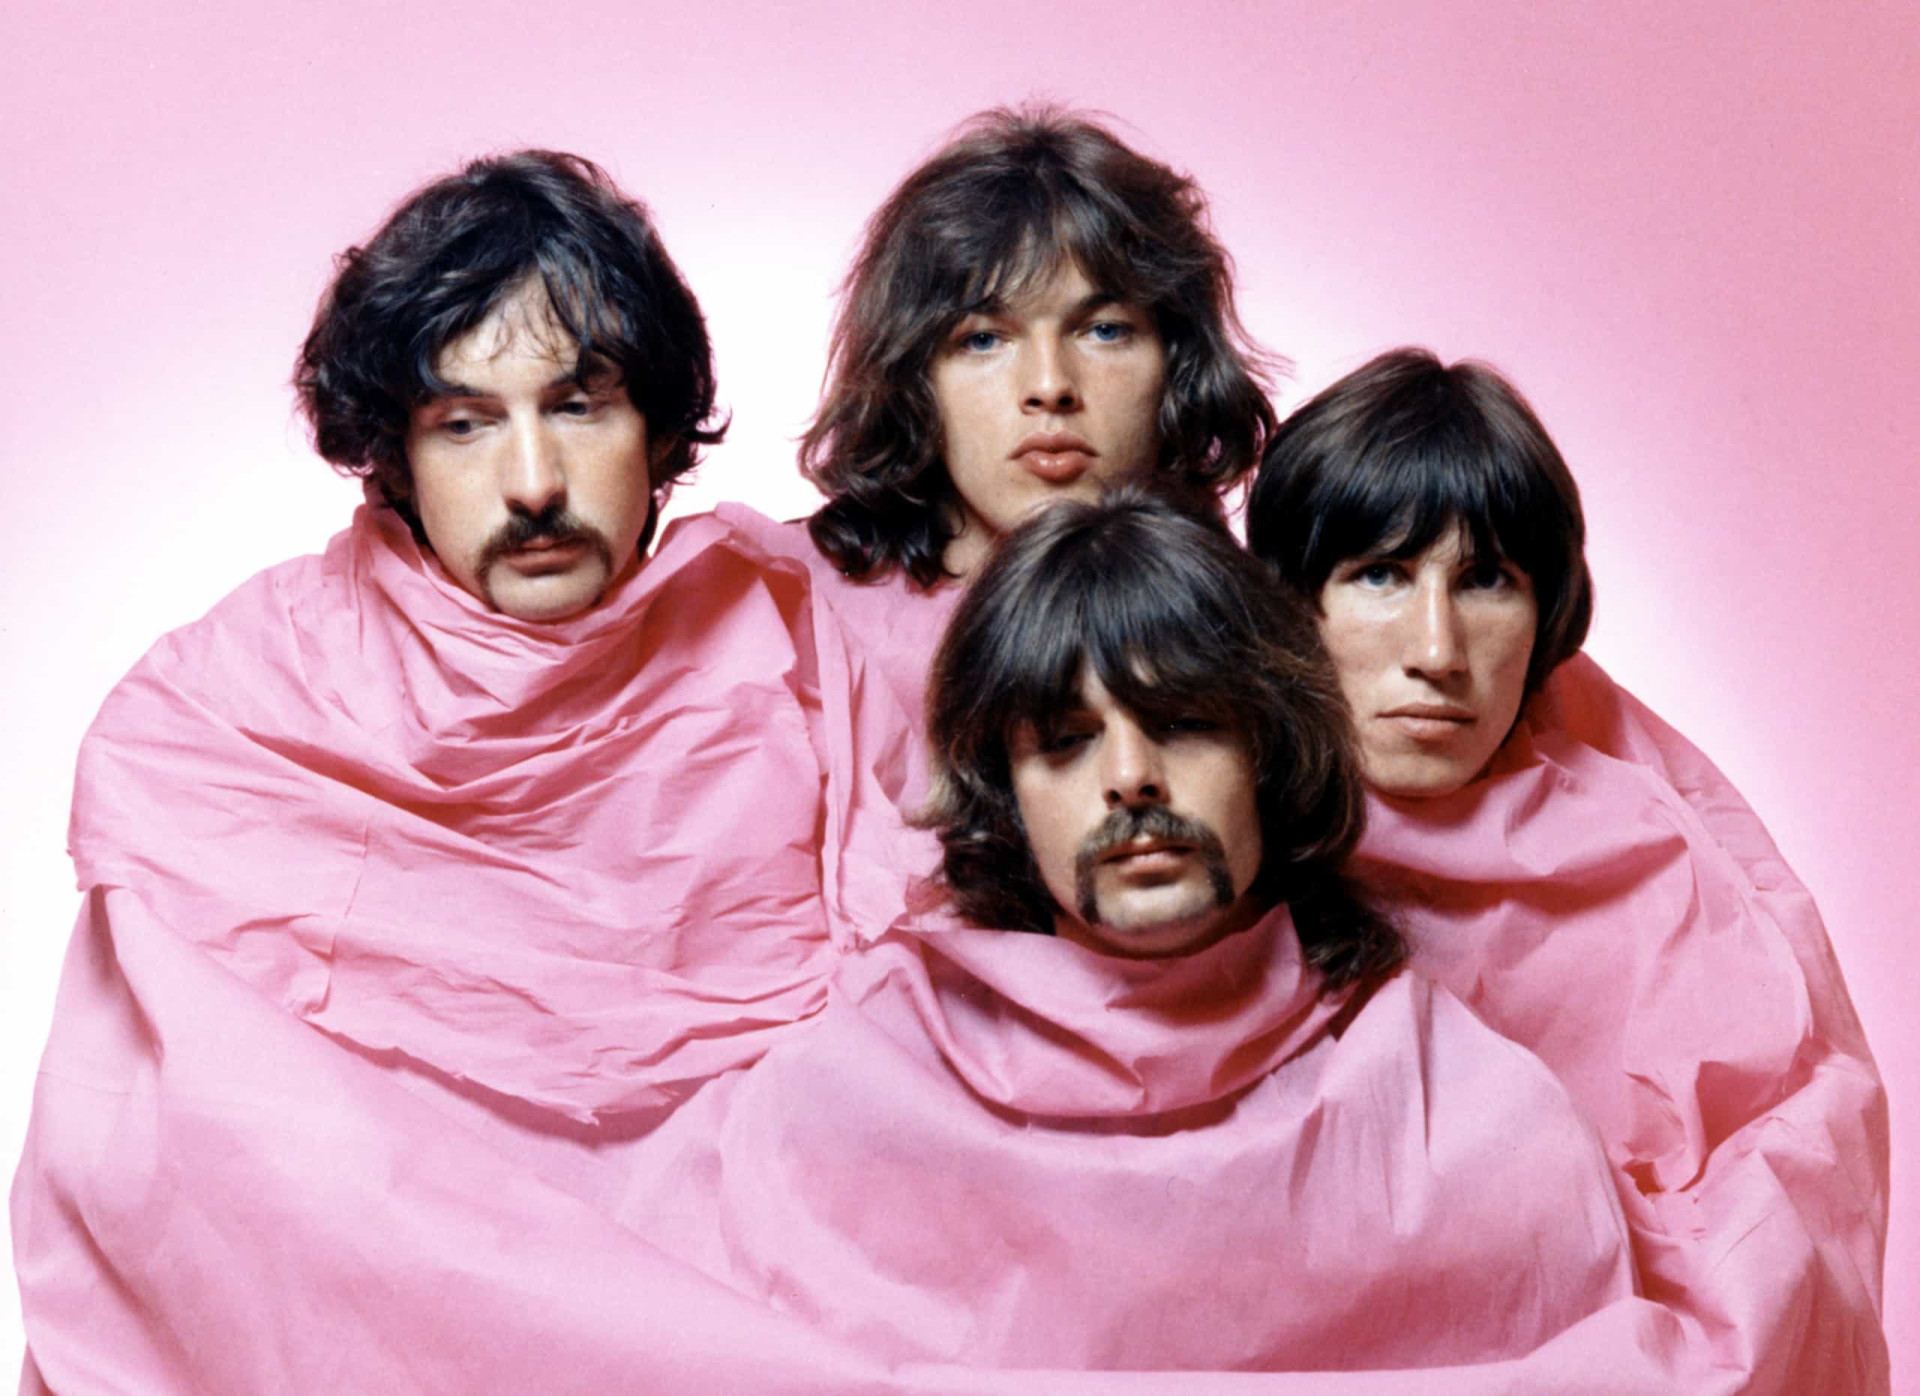 <p>Der Mitbegründer und Frontmann von Pink Floyd, Syd Barrett, hatte einen ausgeprägt skurrilen psychedelischen Stil entwickelt, bevor er die Band verließ und durch David Gilmore ersetzt wurde, der die Band in eine progressivere Rockrichtung lenkte. "Ummagumma" (1969) markiert im Wesentlichen die progressive Ära von Floyd.</p><p>Sie können auch mögen:<a href="https://de.starsinsider.com/n/255836?utm_source=msn.com&utm_medium=display&utm_campaign=referral_description&utm_content=545349"> Harry and Meghan: So sieht Liebe aus</a></p>